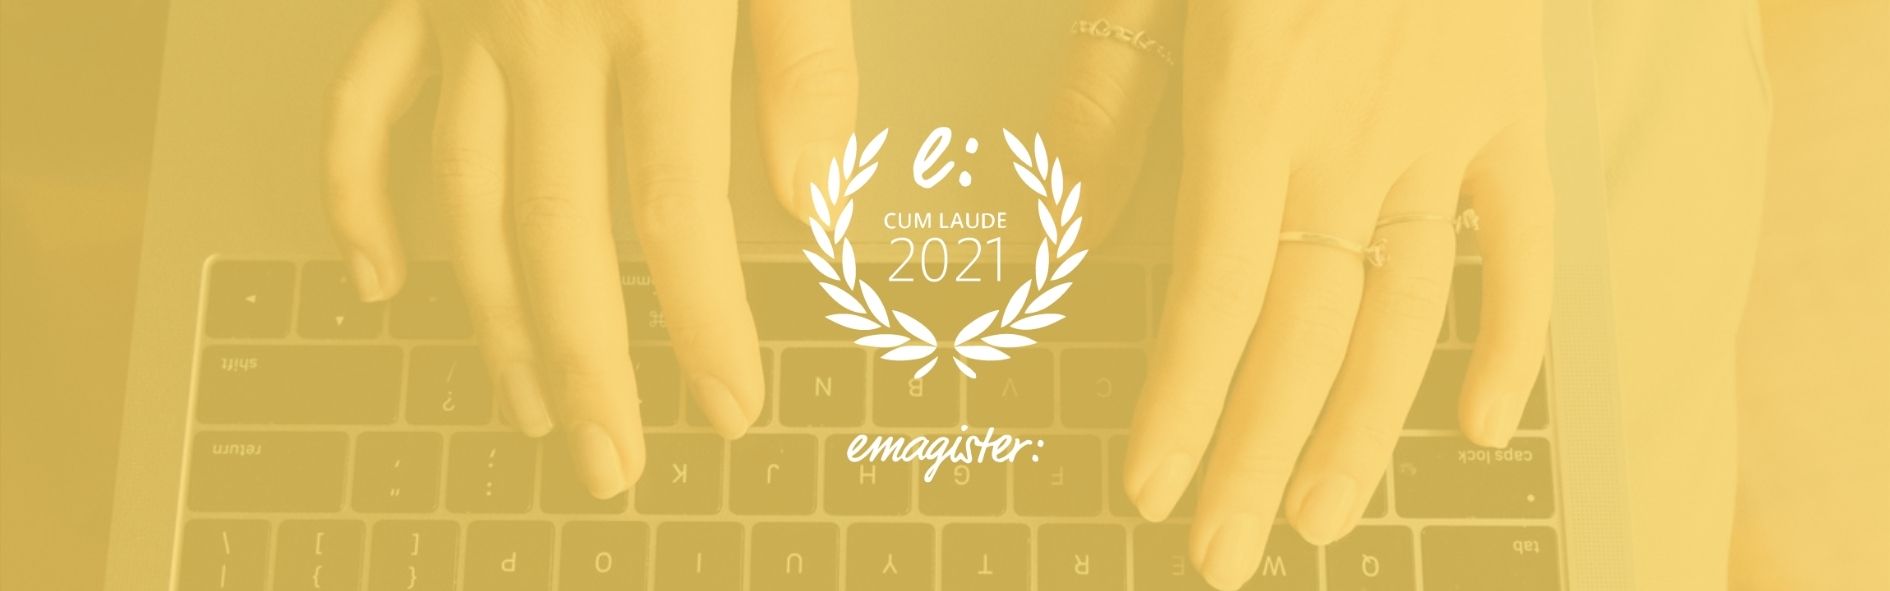 Inensal es premiada con el Sello Cum Laude 2021 de Emagister